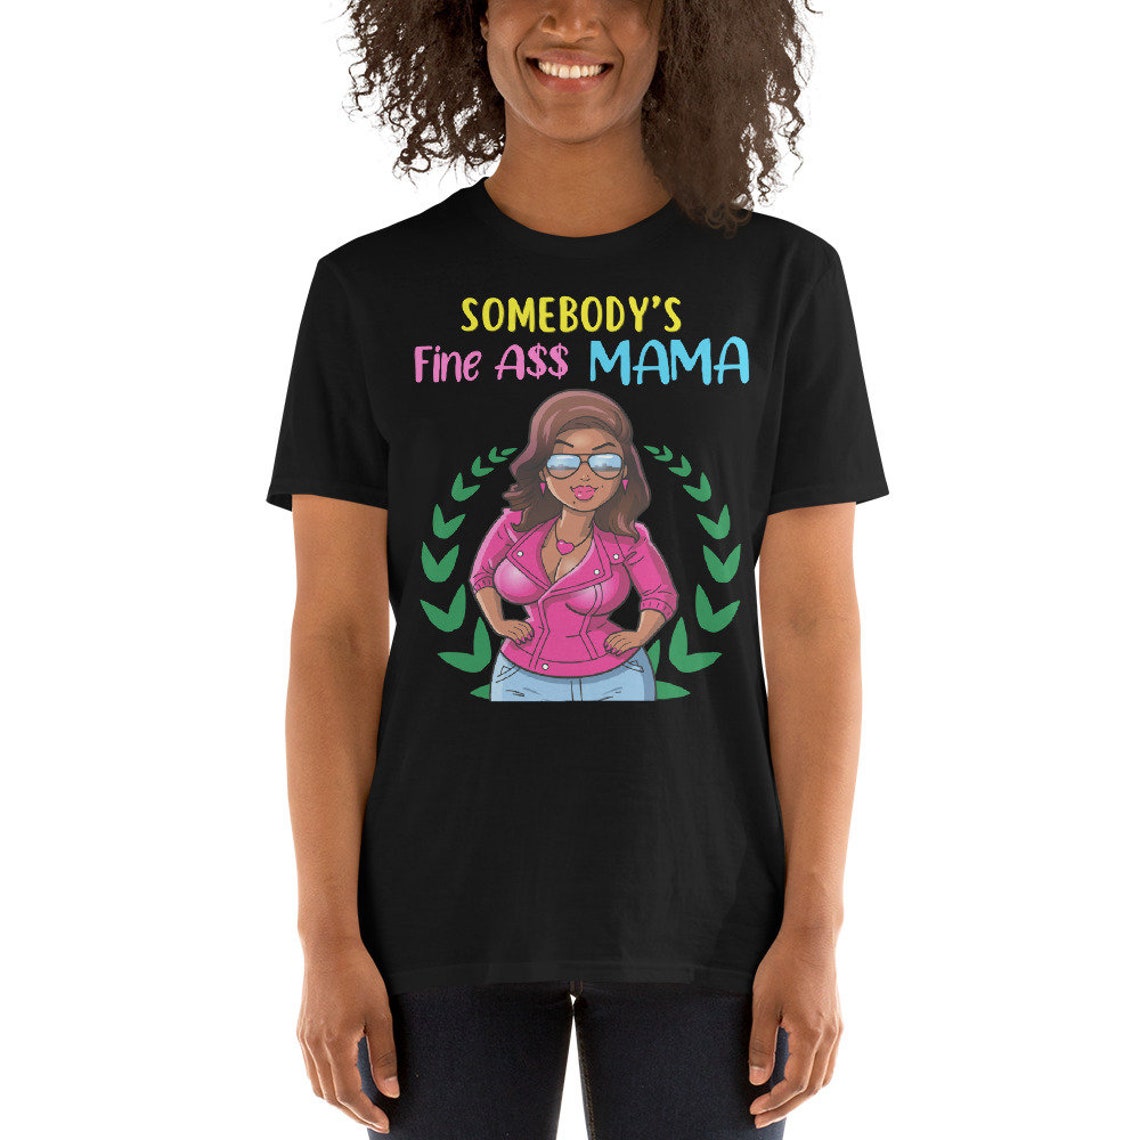 Afro Women Shirt, Black Mom Shirt, Cute Women Shirt